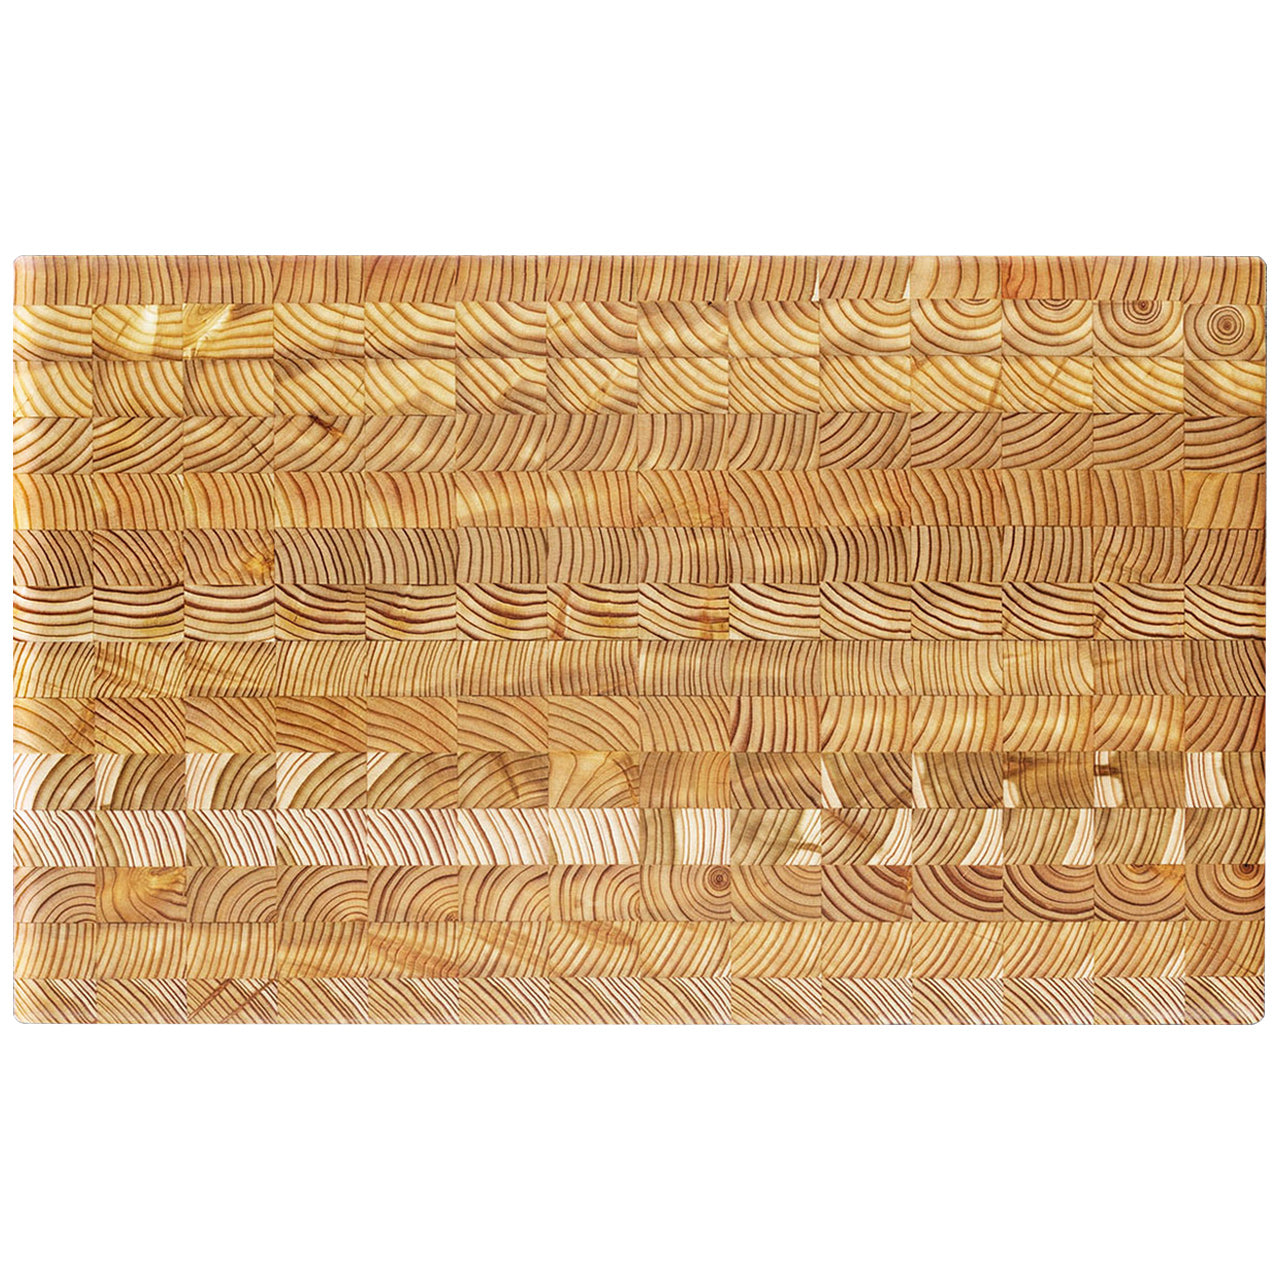 Larchwood Cutting Board (Premium)